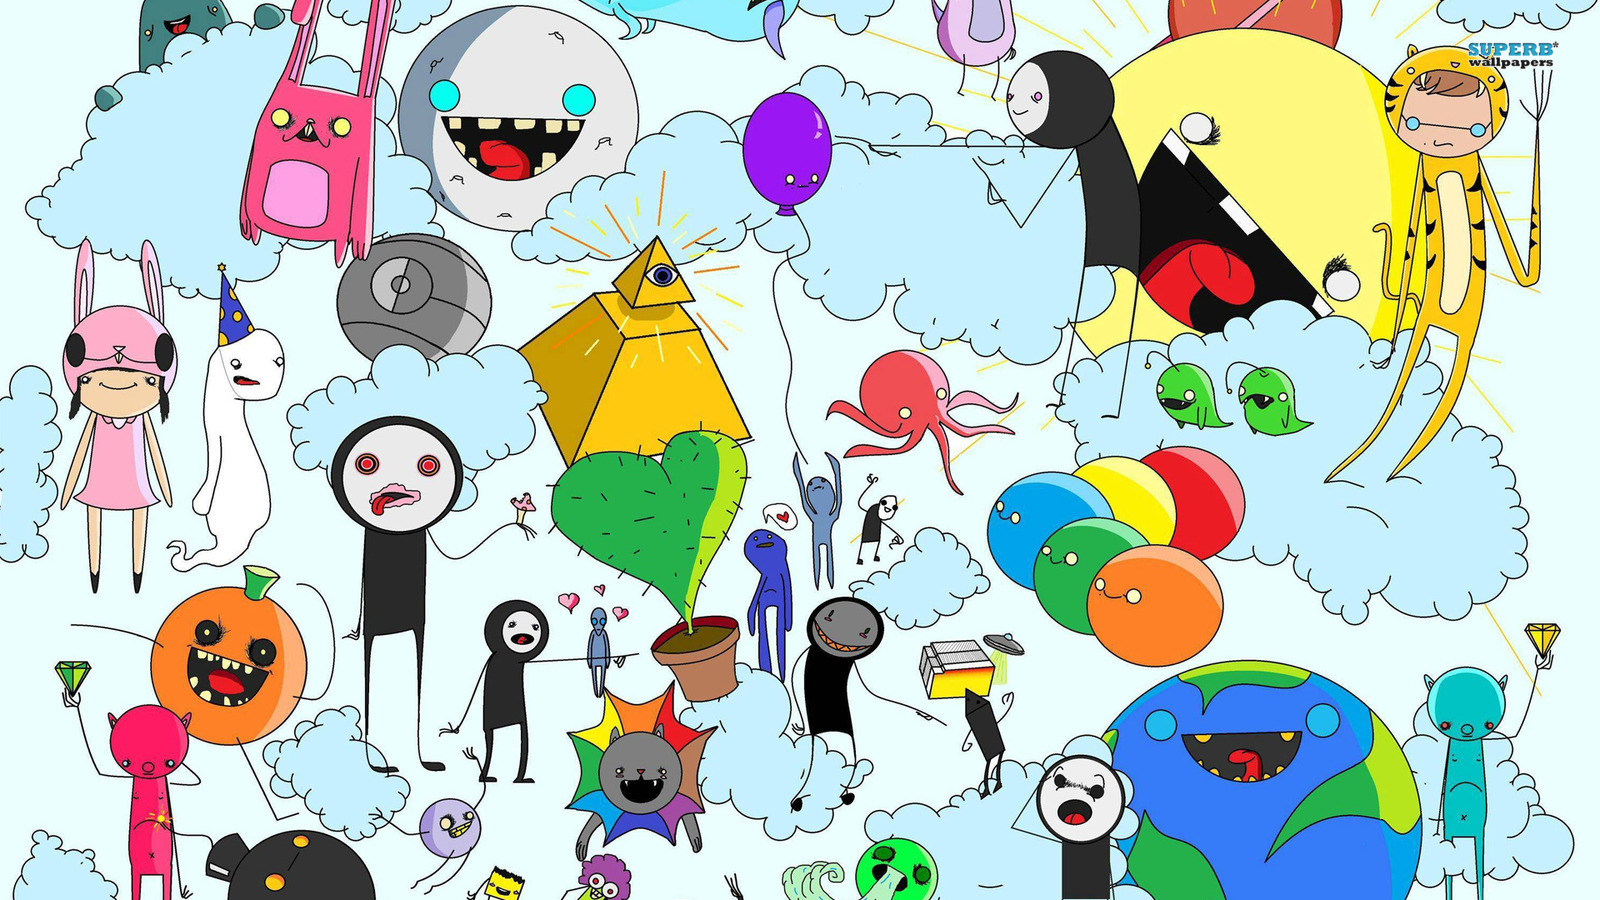 Adventure Time - Cartoon Network Wallpaper 38672273 - Fanpop